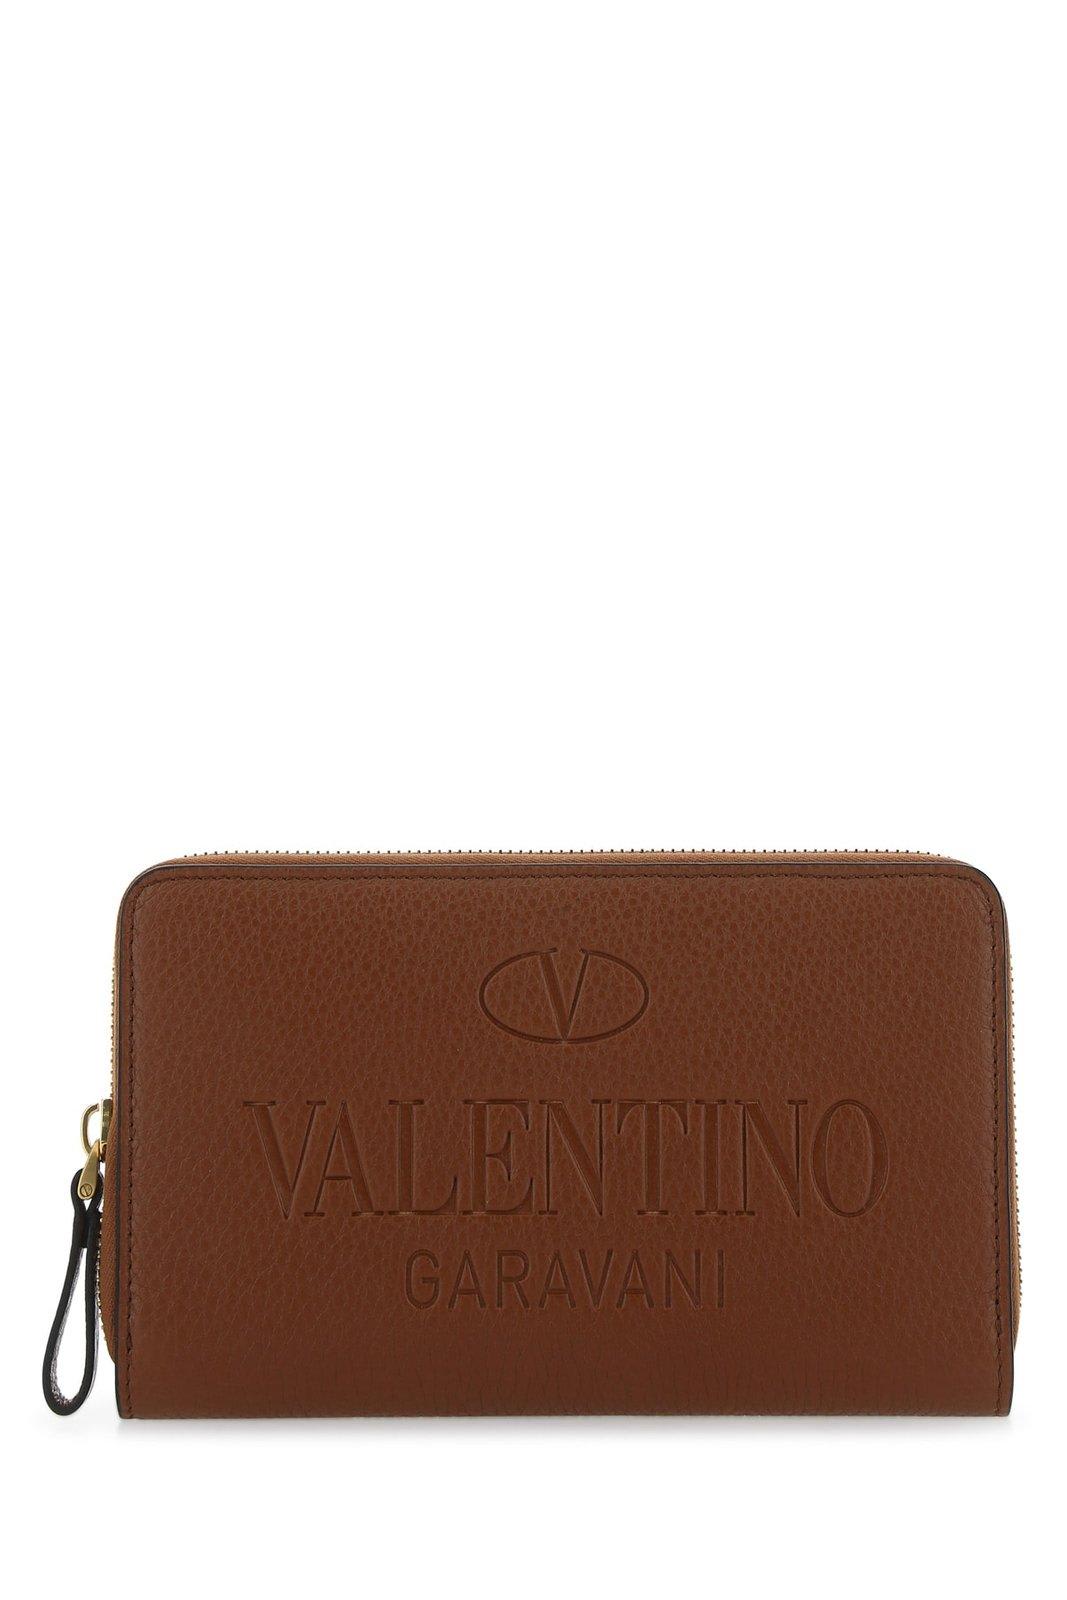 Valentino Garavani Logo Debossed Zip-up Wallet